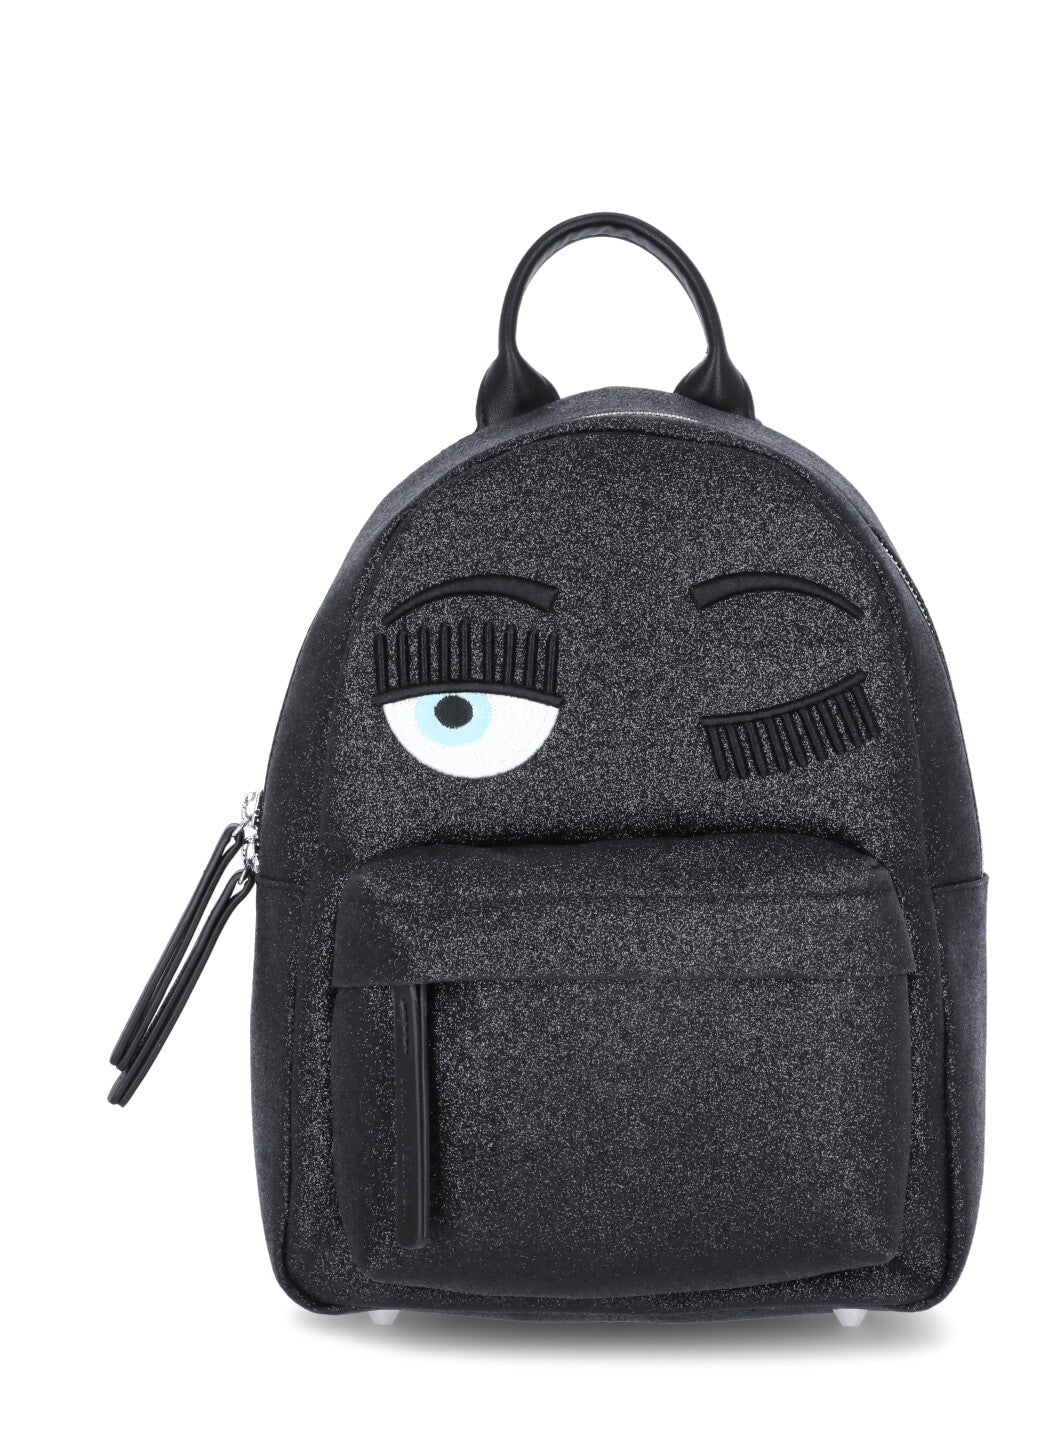 Chiara Ferragni Flirting Eye Glitter Backpack In Black